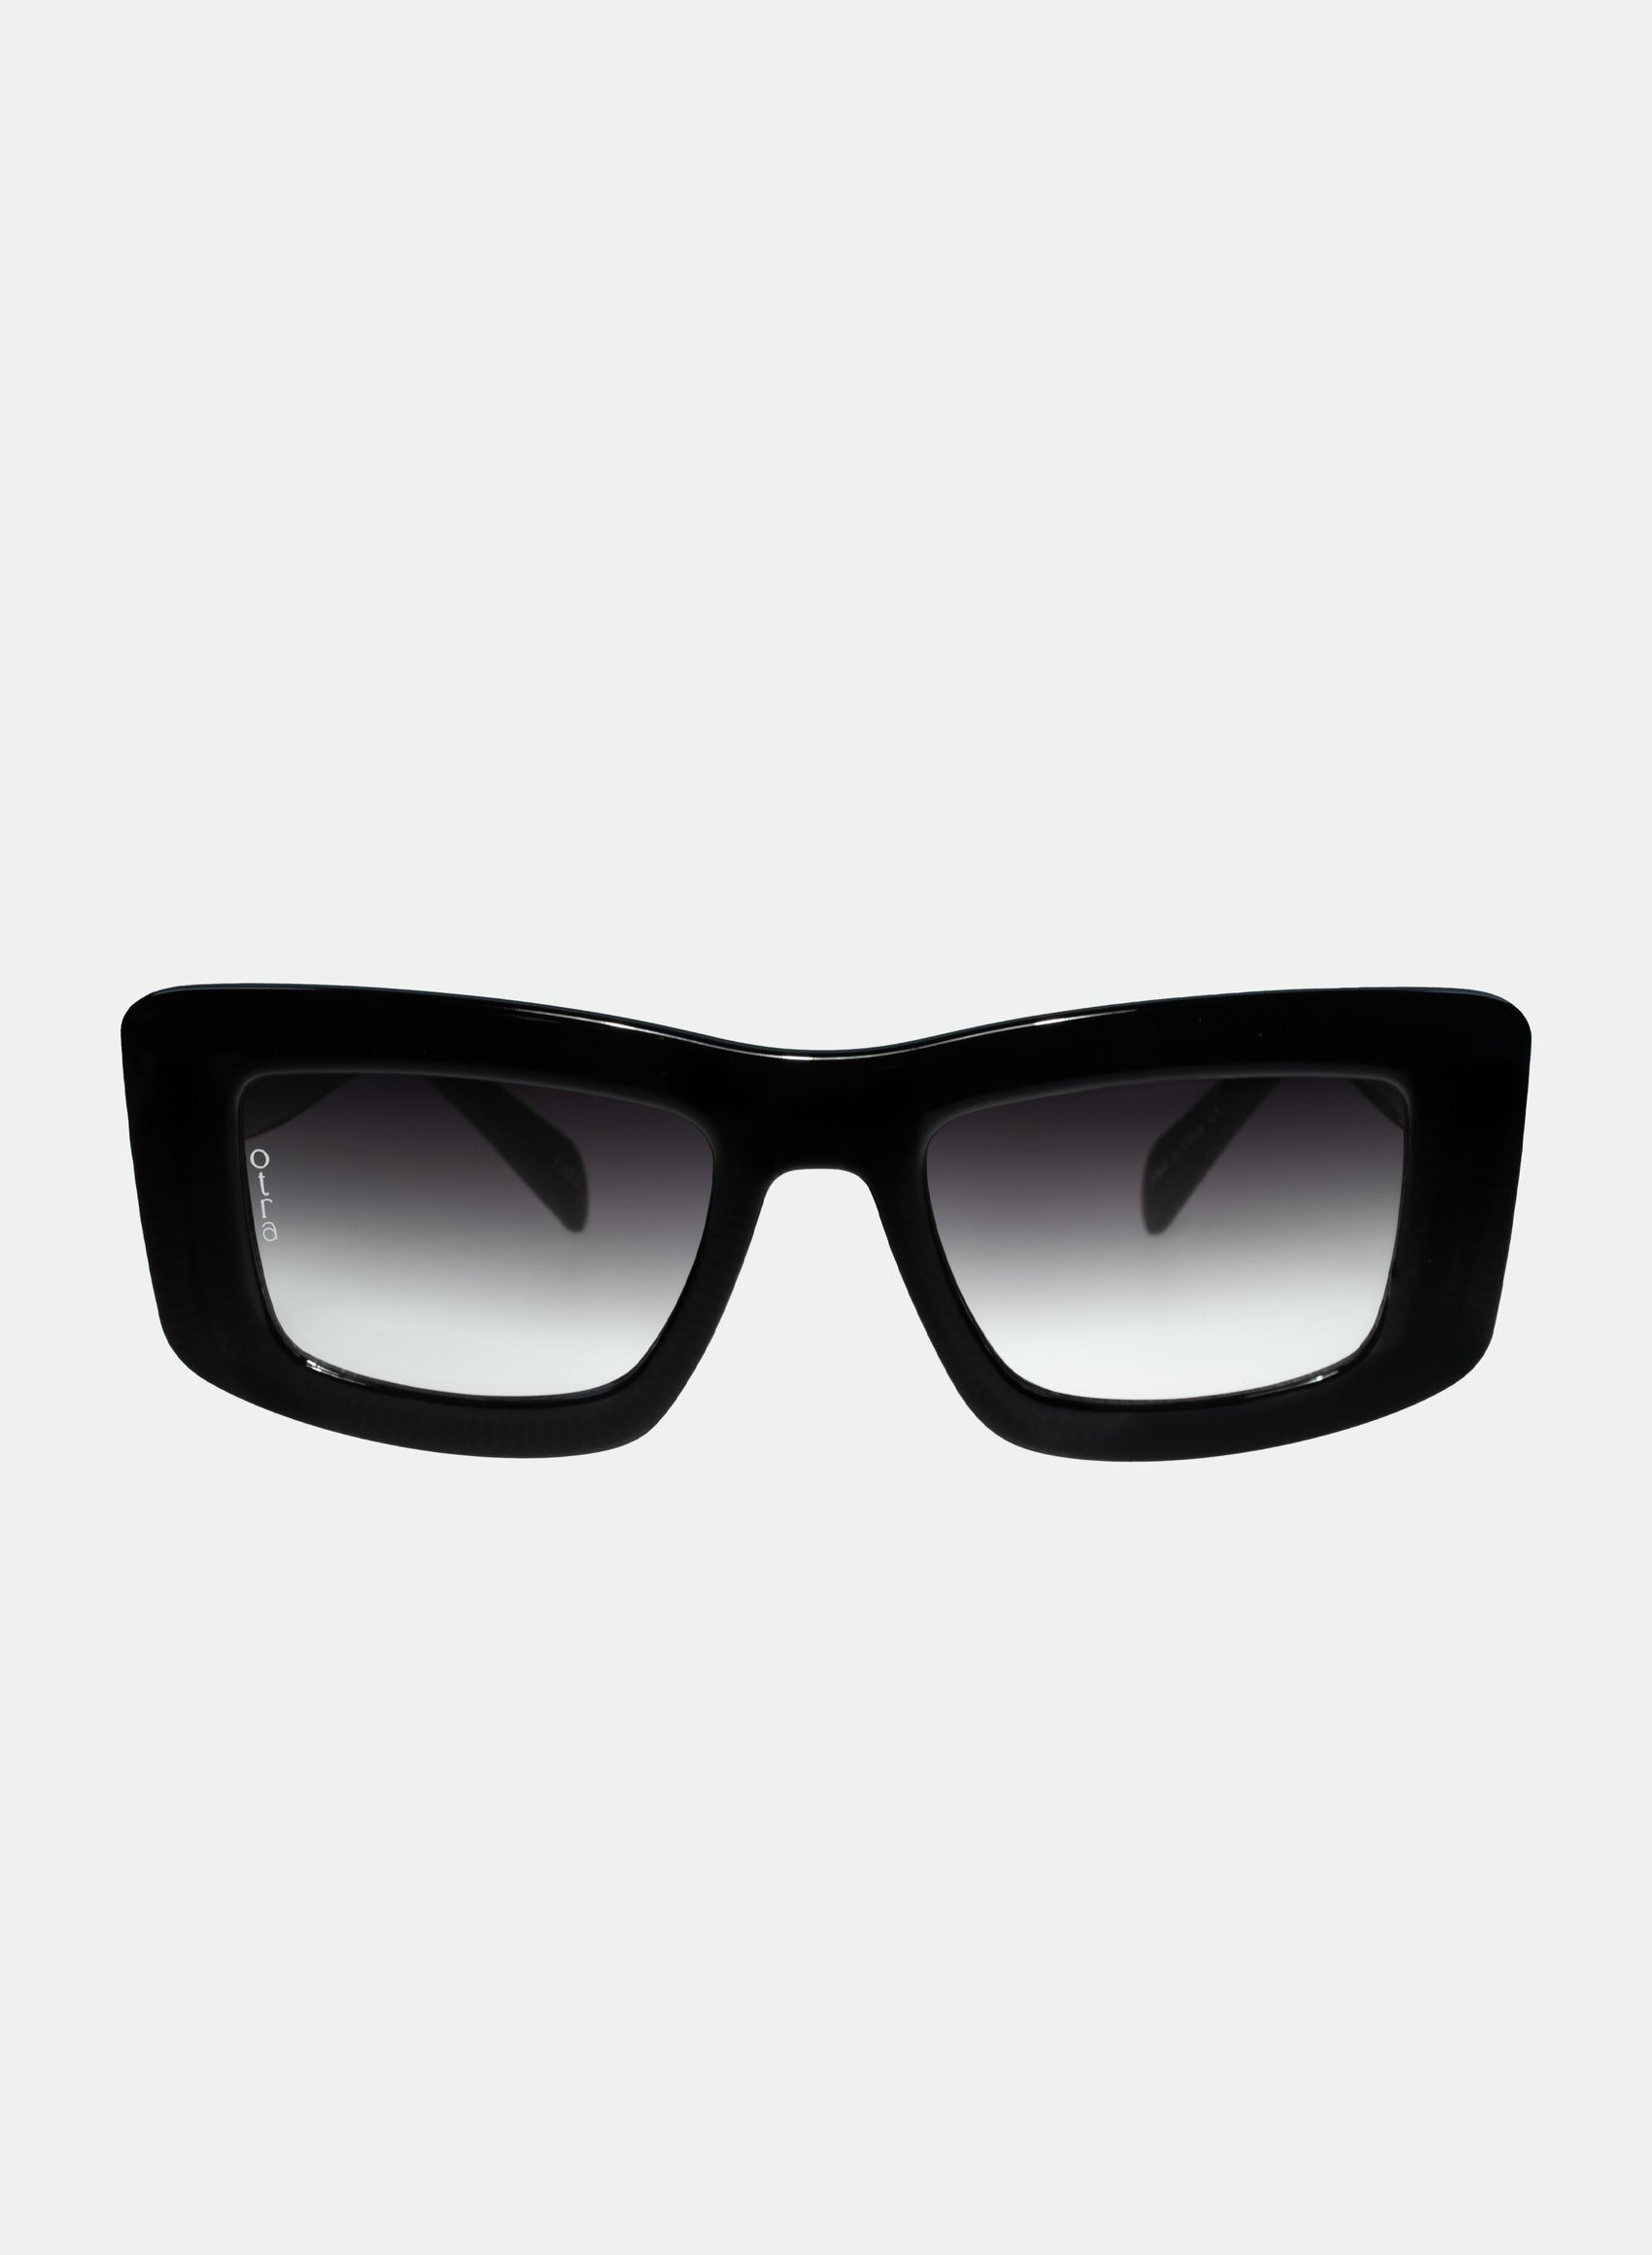 Marsha thick cat eye sunglasses in black